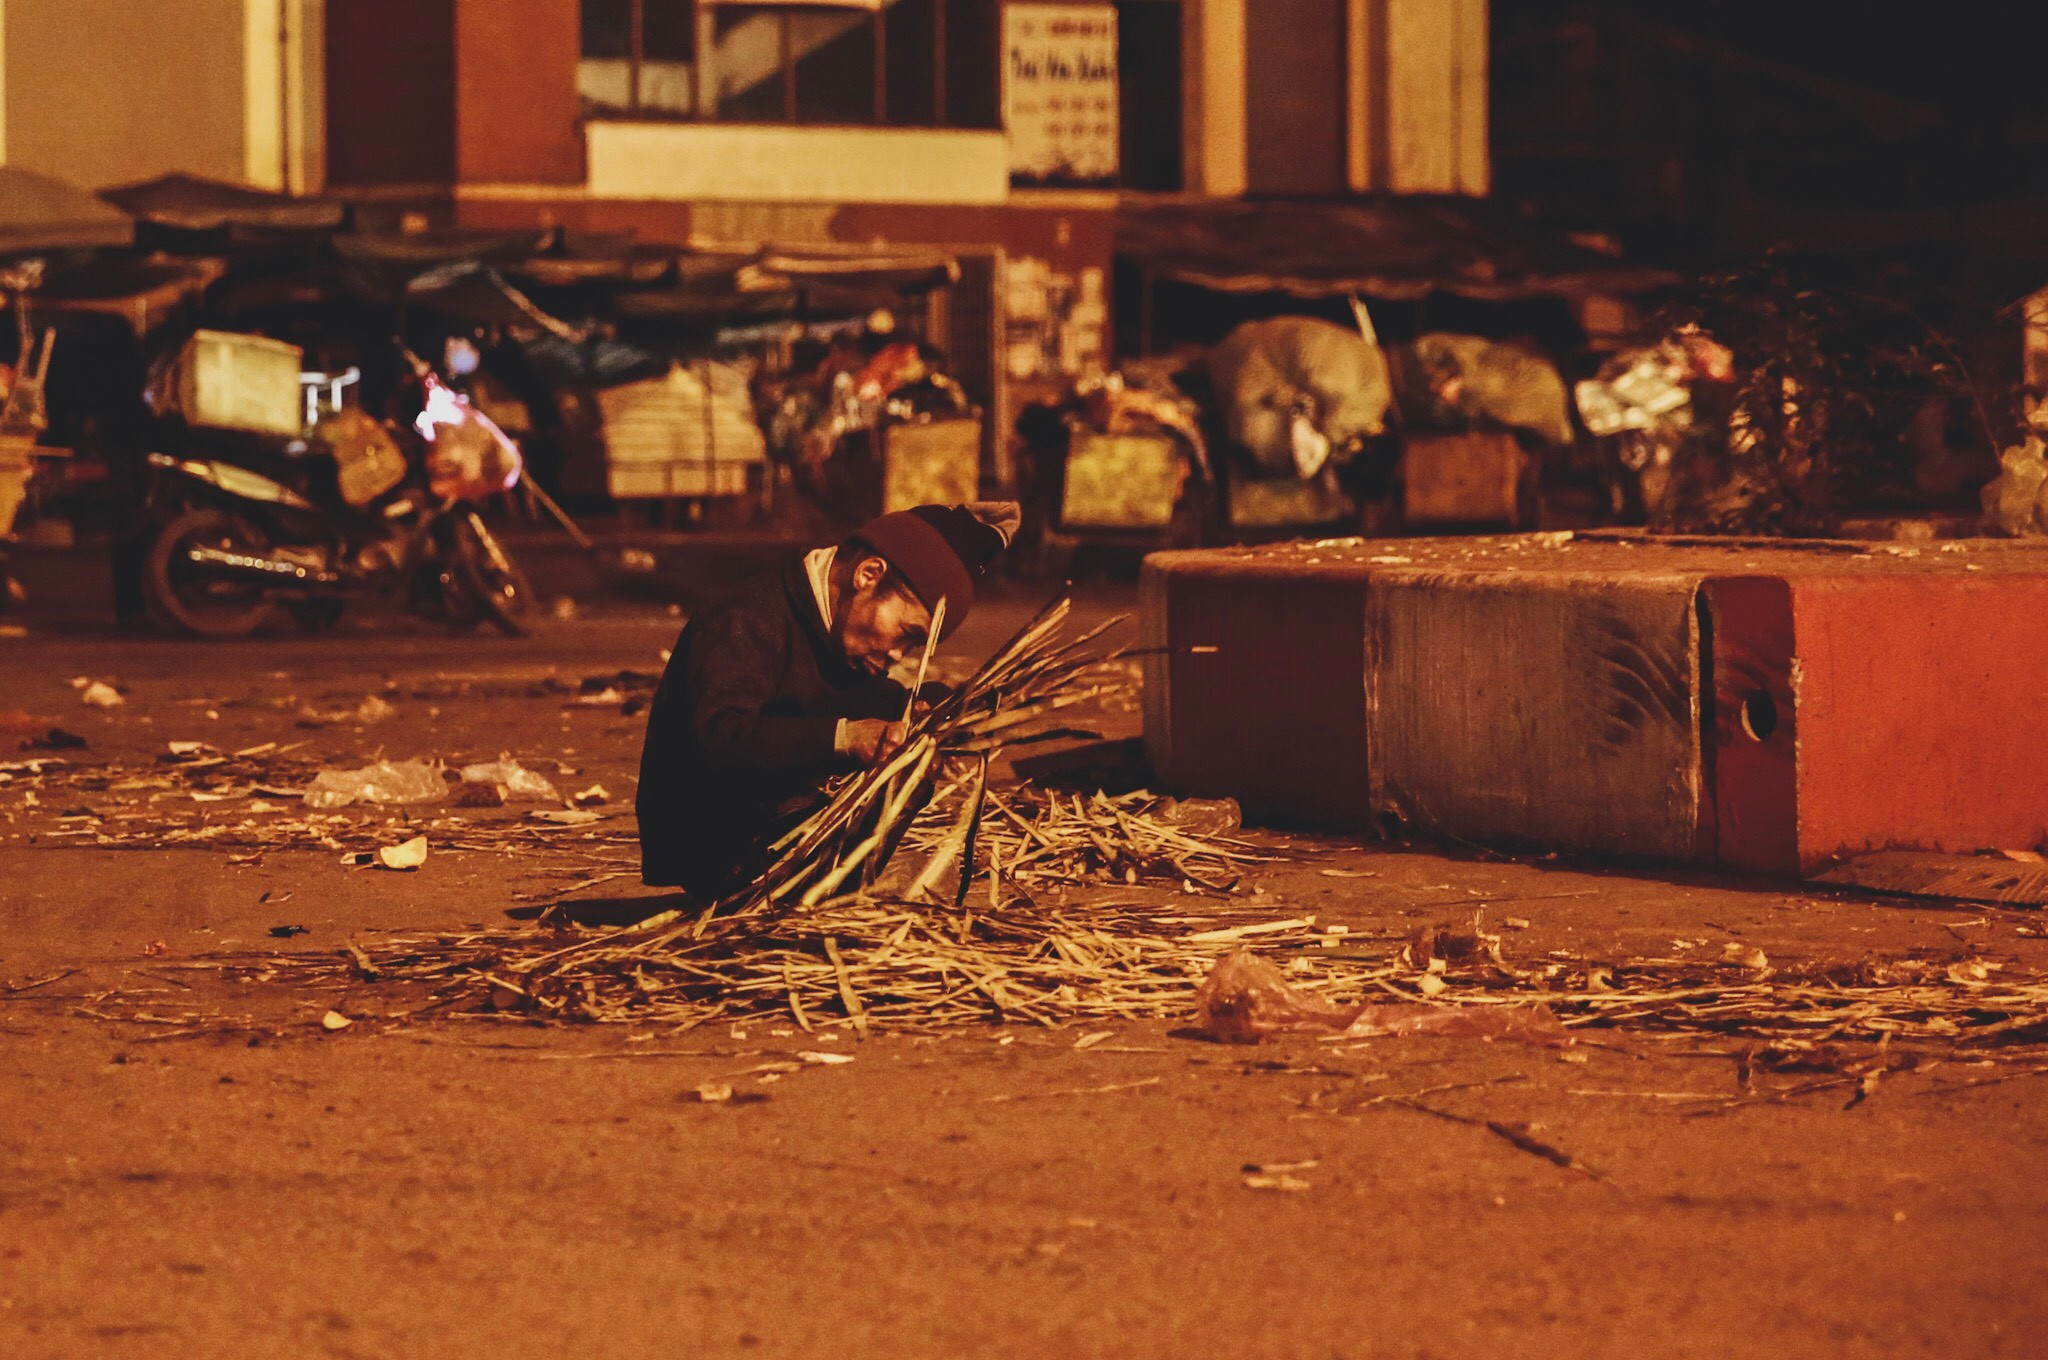 Một người vô gia cư bới tìm trong đống rác. Ảnh: Hải Vương